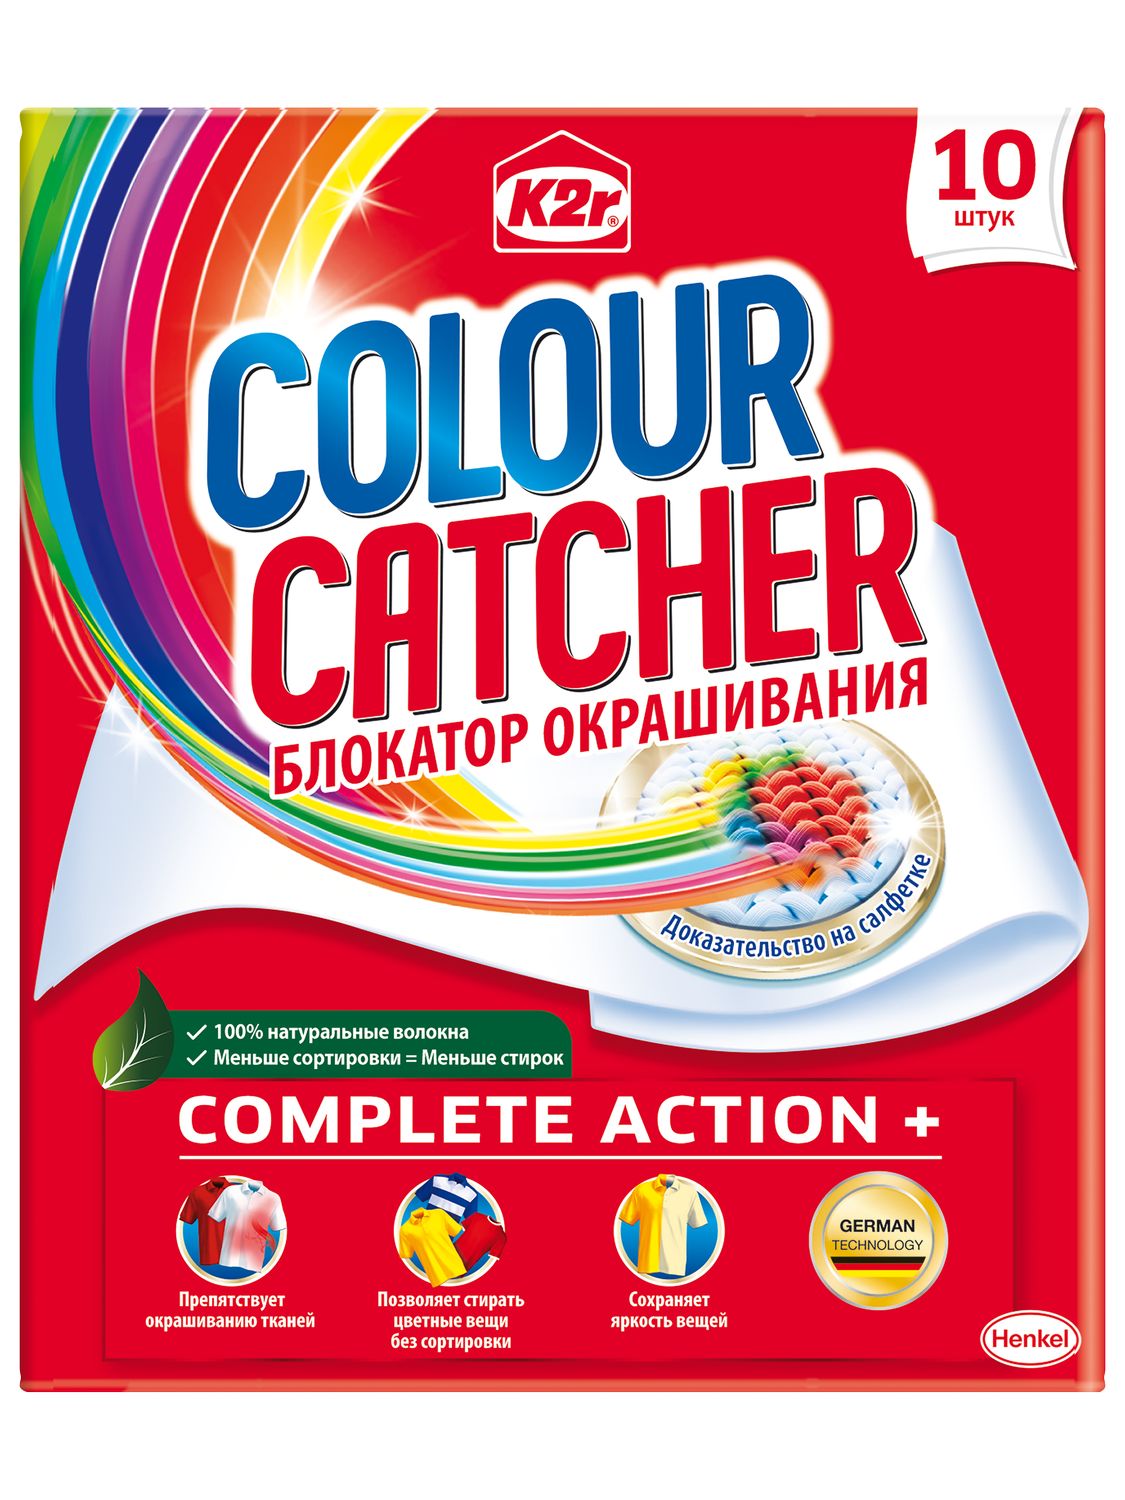 Салфетки для стирки K2r Colour Catcher цветопоглощение, 10 шт. - фото 2